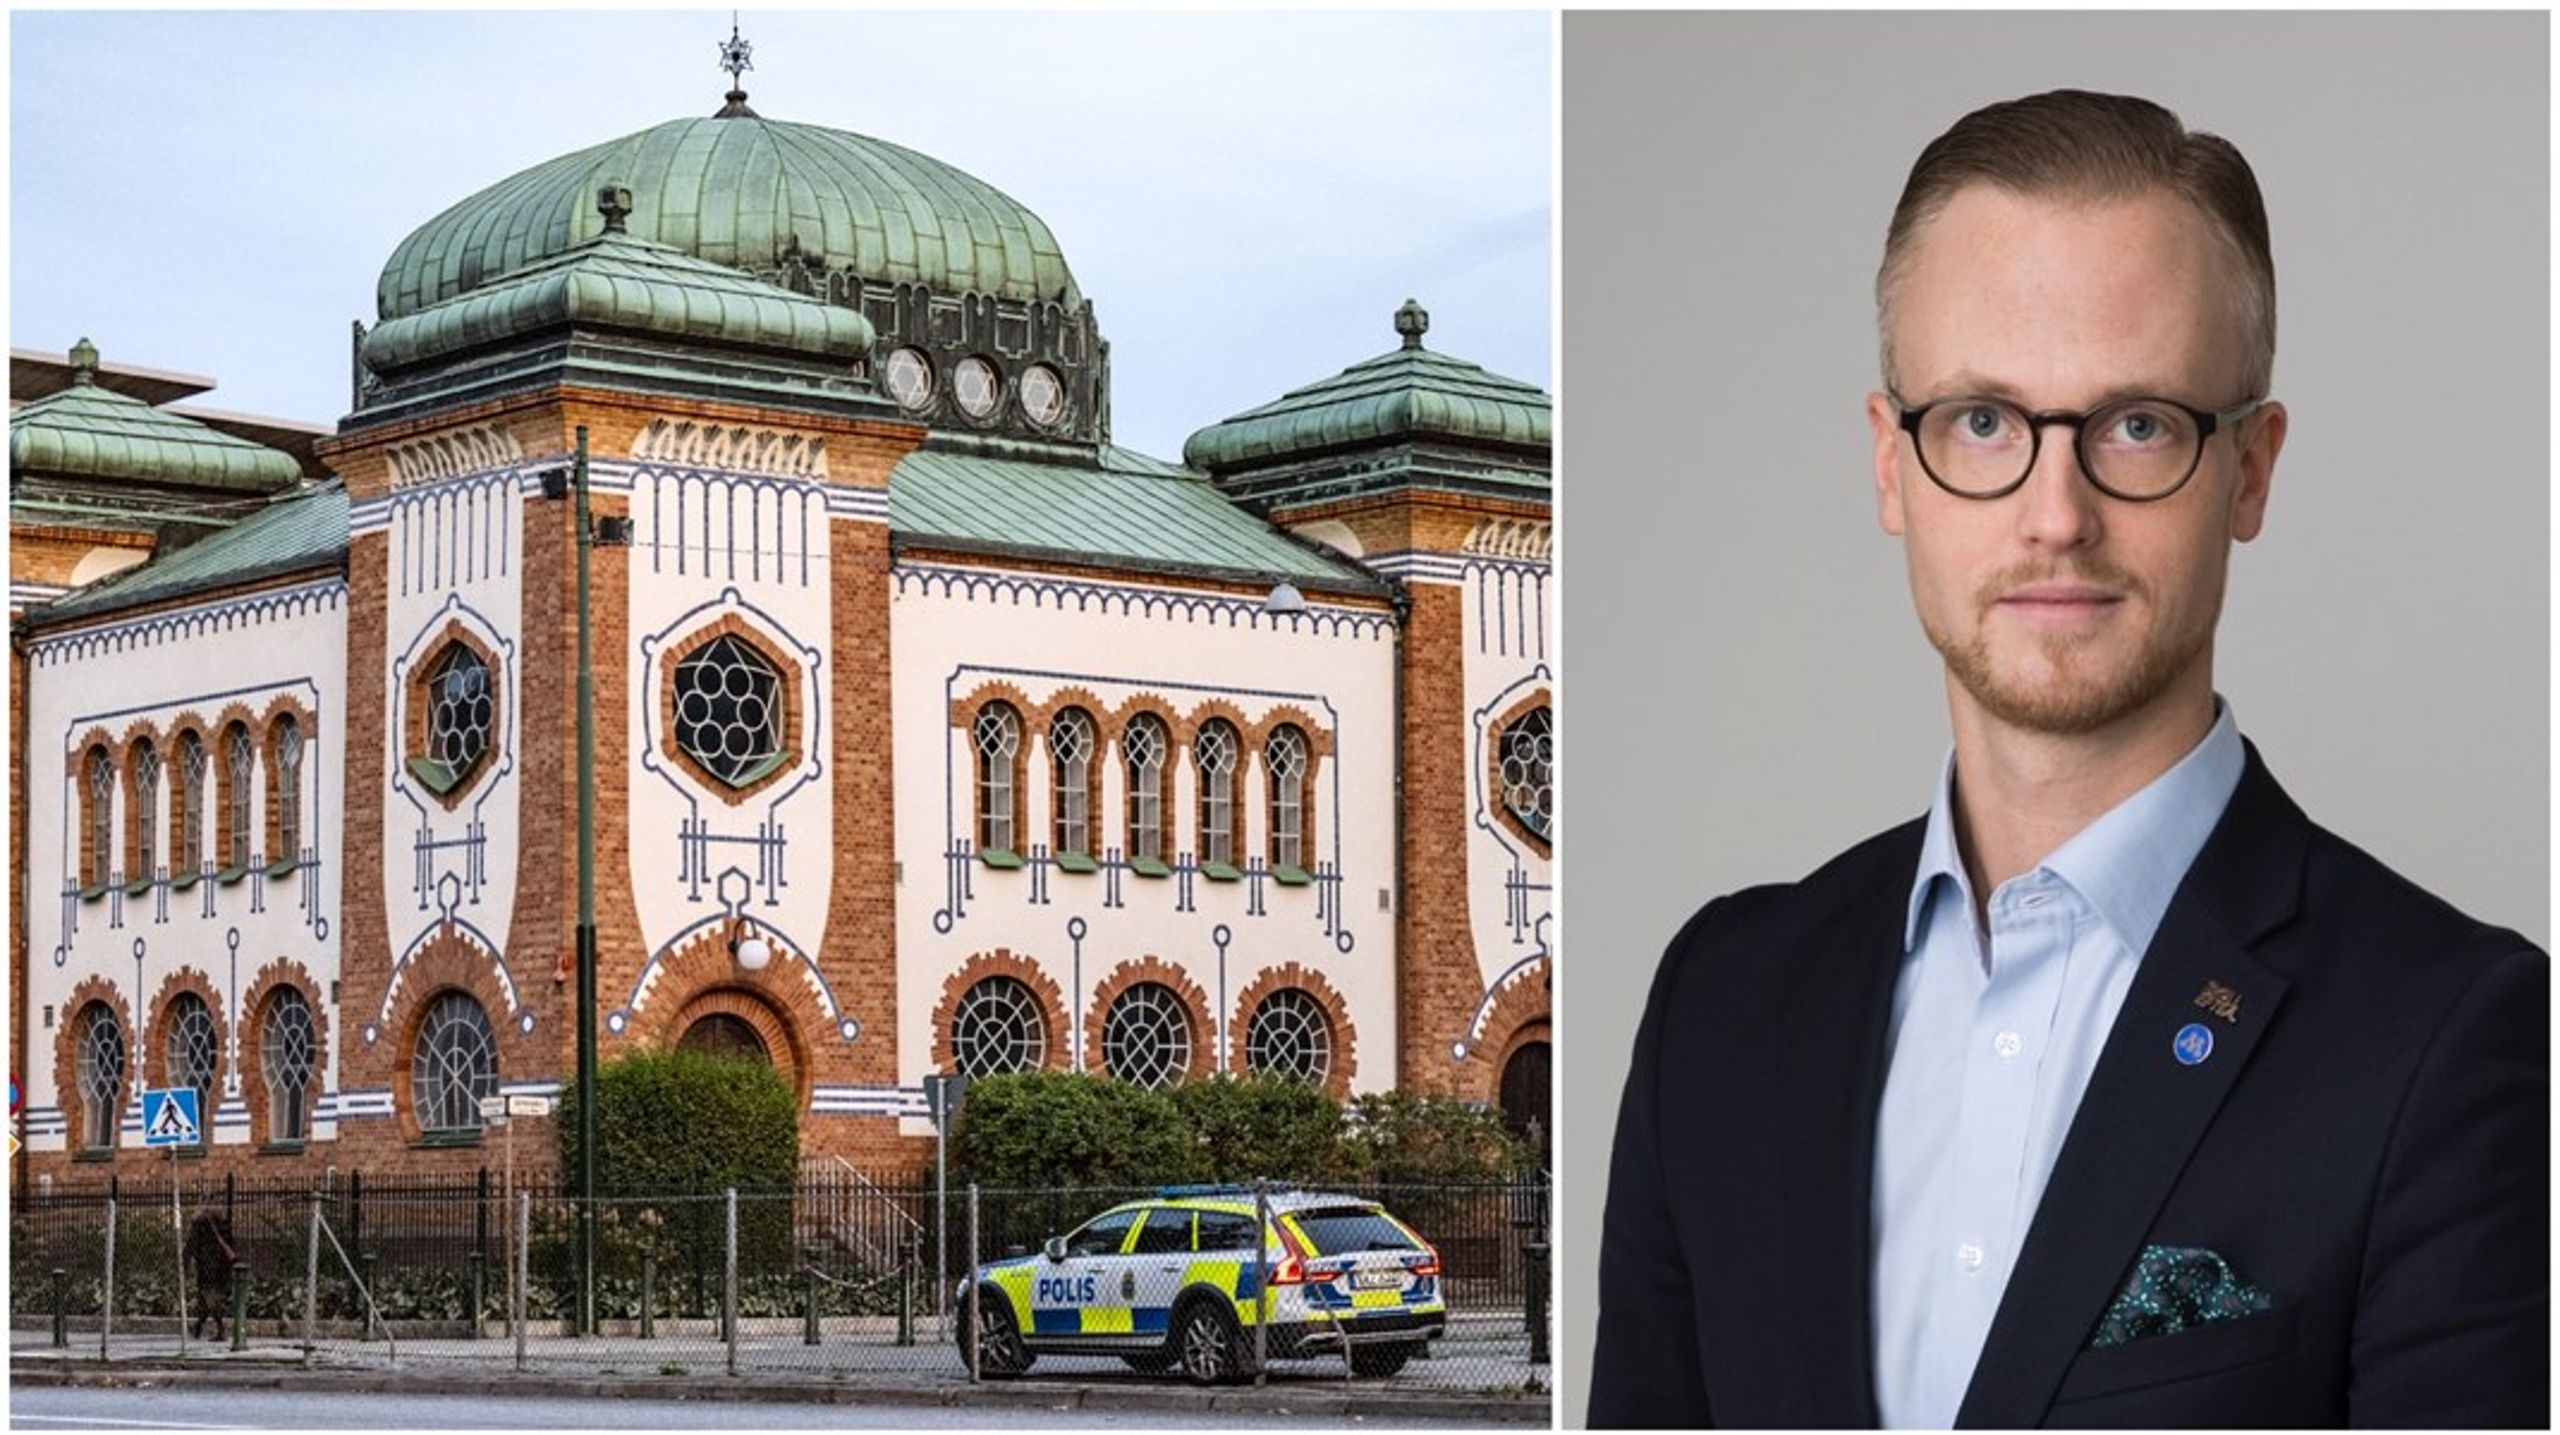 Otryggheten kring att leva med öppen judisk identitet i Sverige har ökat markant, skriver debattören.